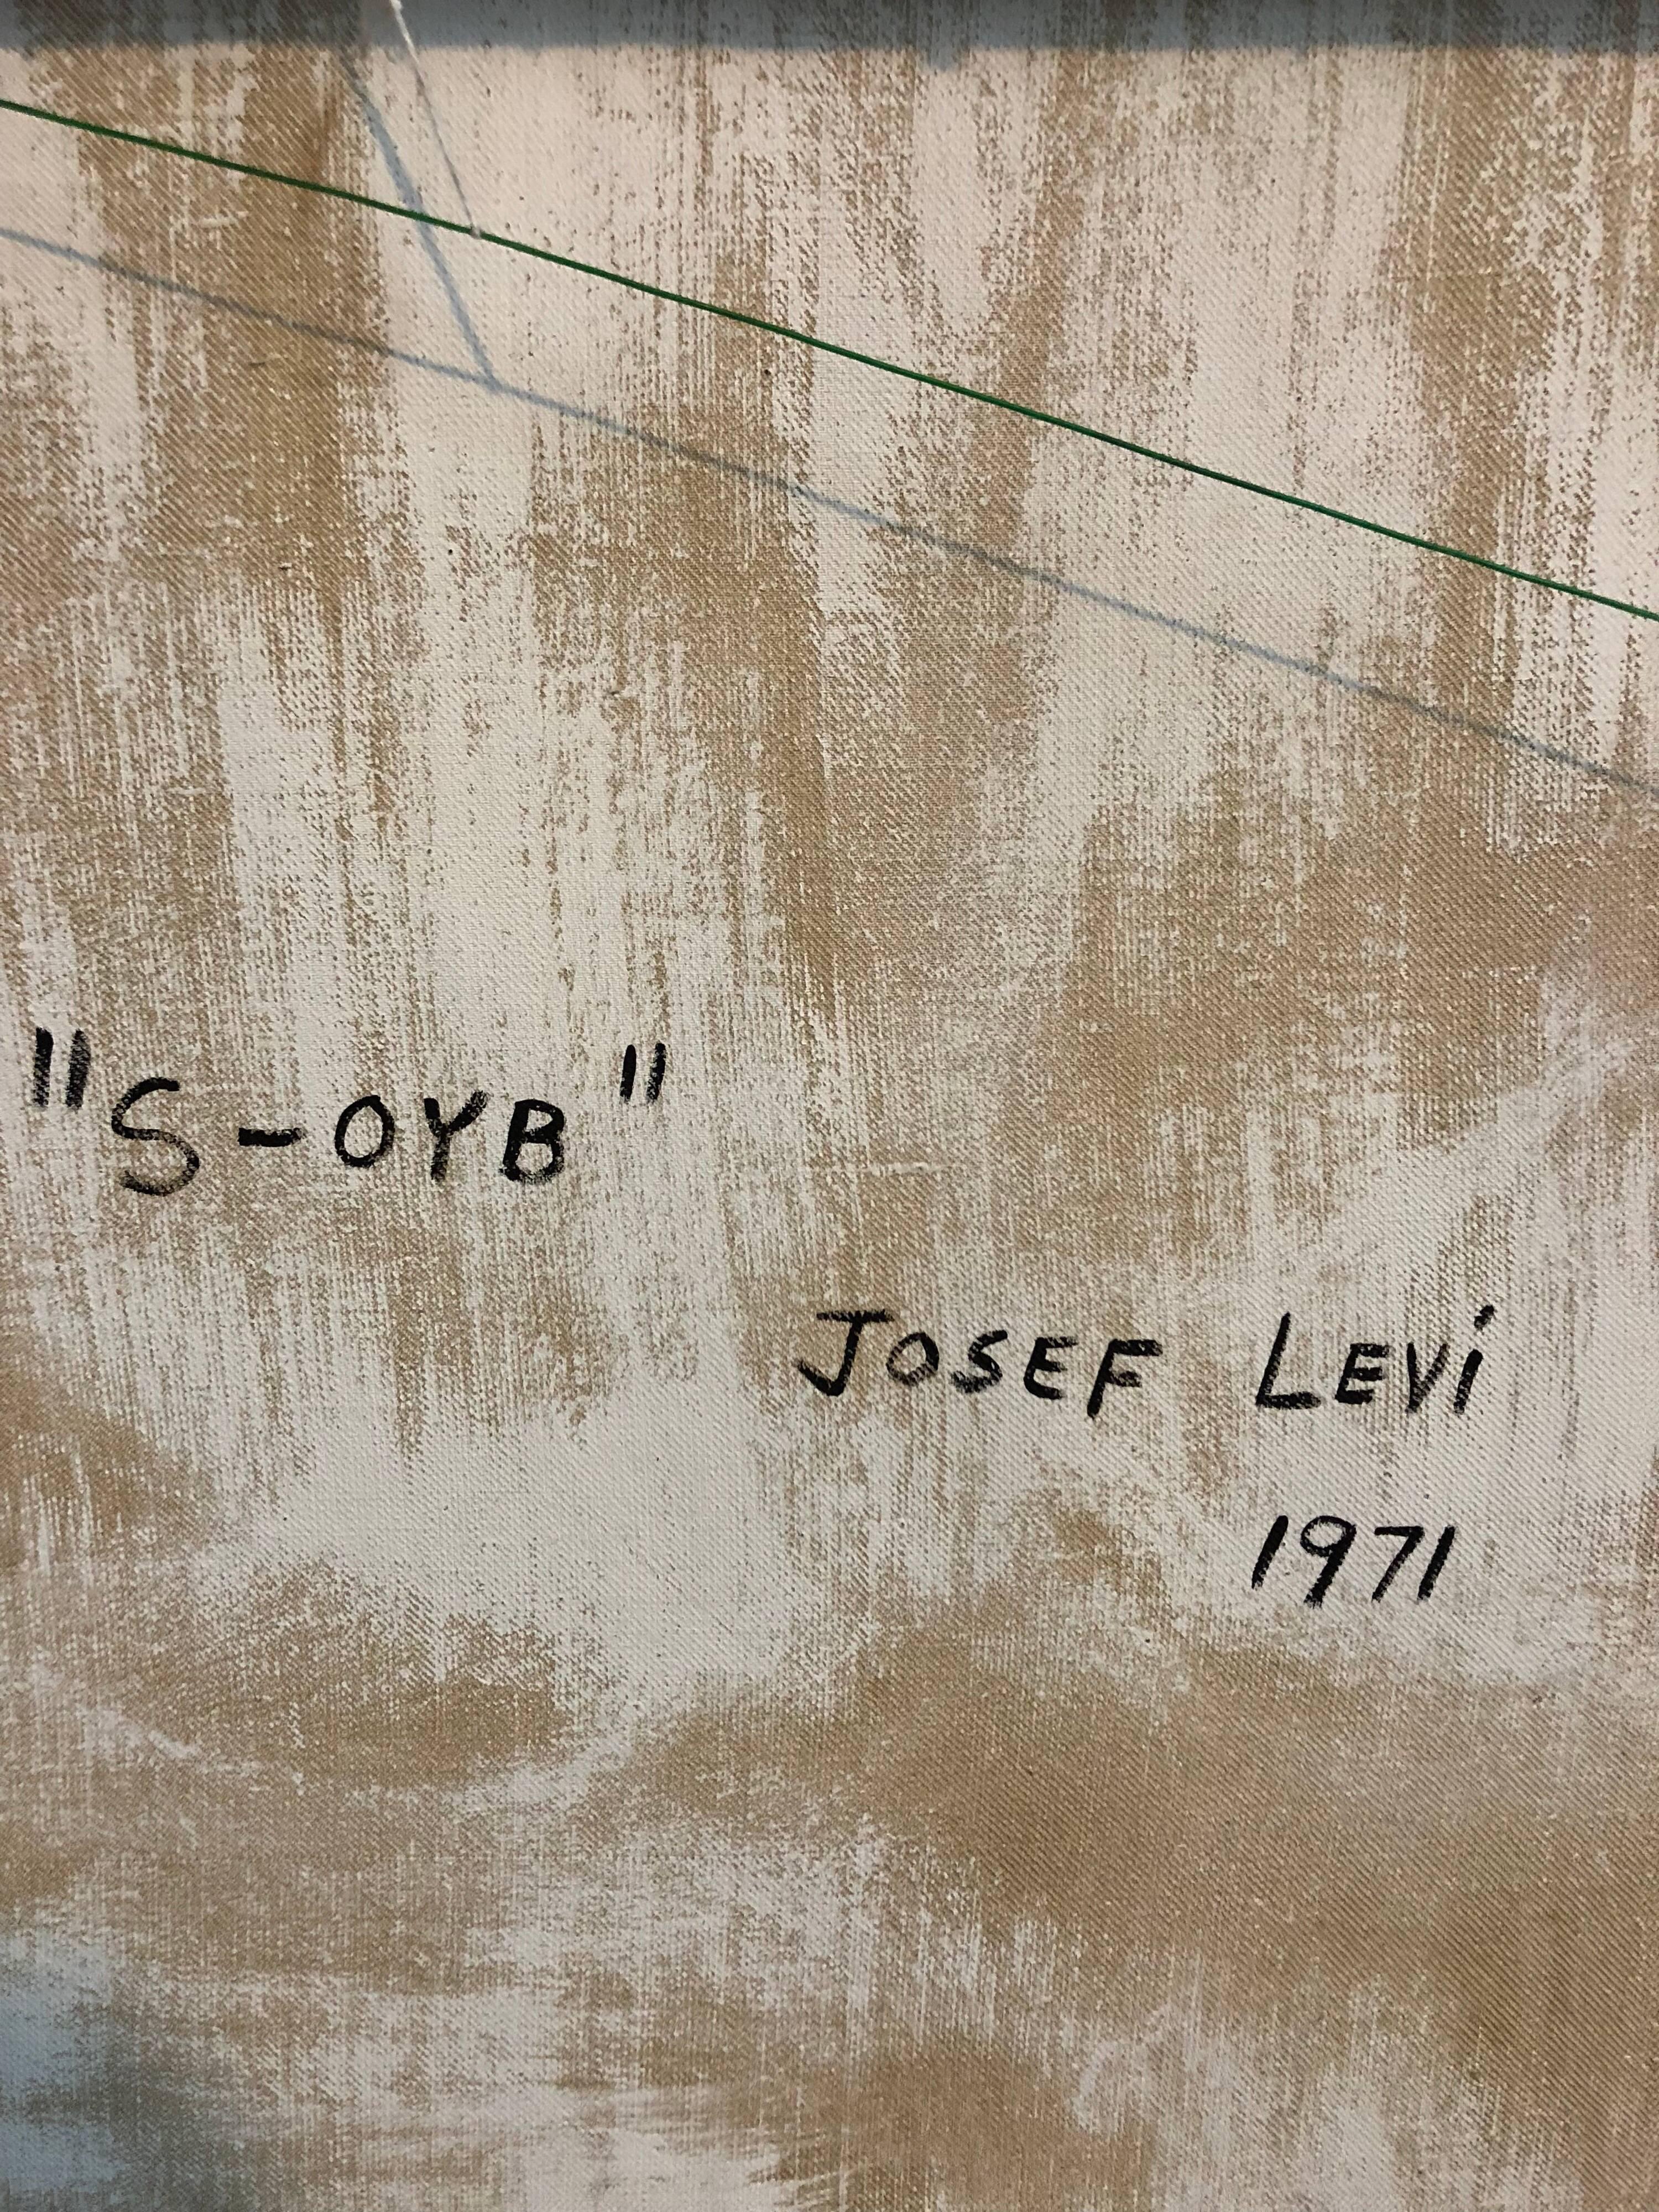 

Josef Alan Levi (1938) ist ein amerikanischer Künstler, dessen Werke eine Reihe unterschiedlicher Stile umfassen, die jedoch durch bestimmte, immer wiederkehrende Themen miteinander verbunden sind. Josef Levi's künstlerische Laufbahn begann in den